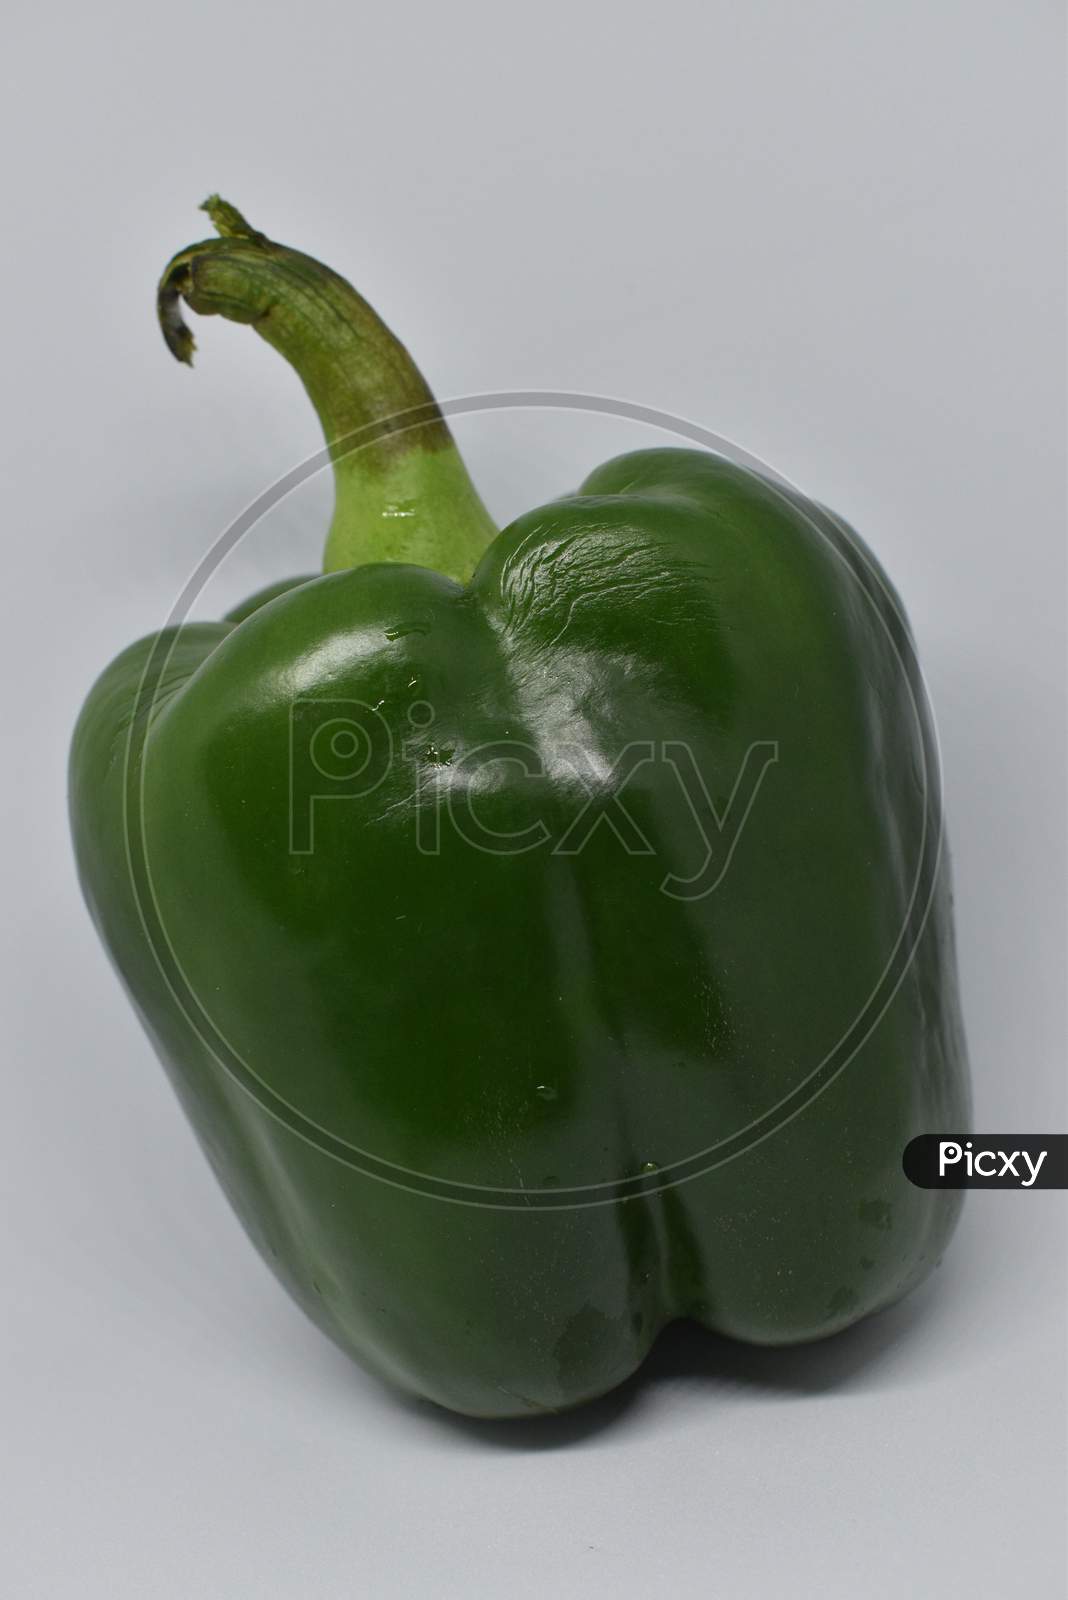 Green Bell Pepper On White Background.